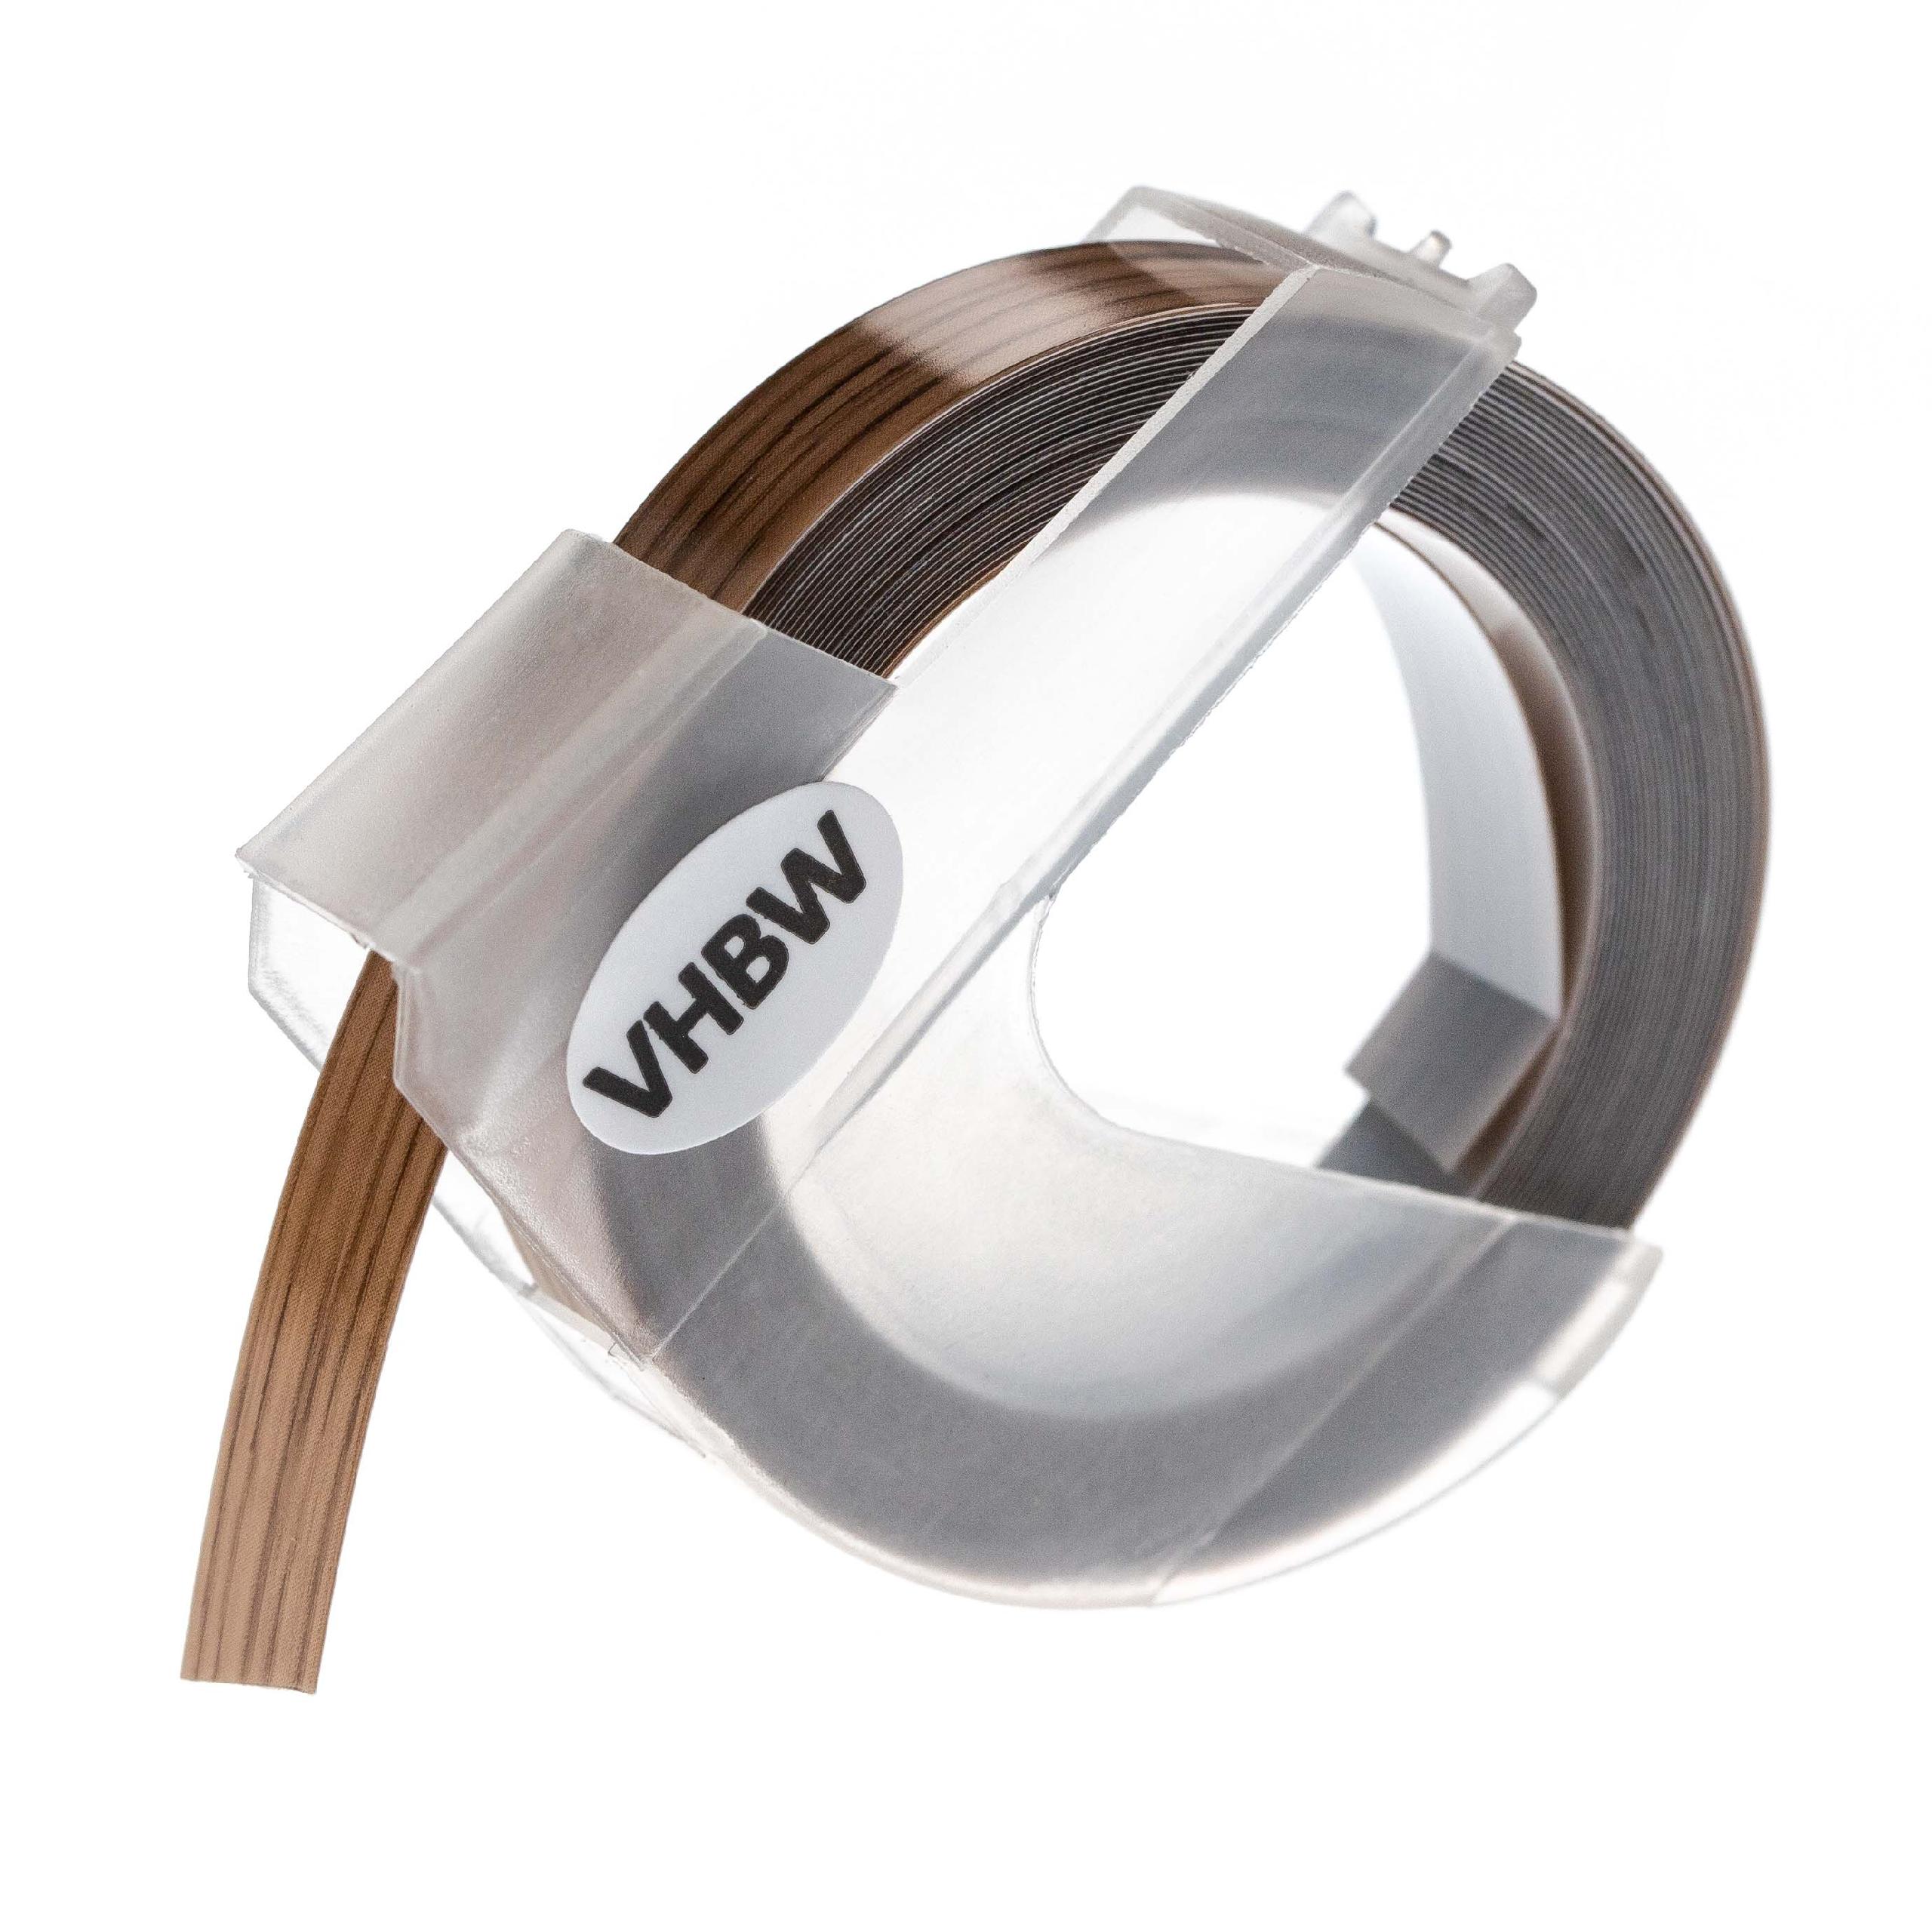 Nastro goffratura 3D sostituisce Dymo 0898200, S0898200 per etichettatrice Motex 9mm bianco su marrone